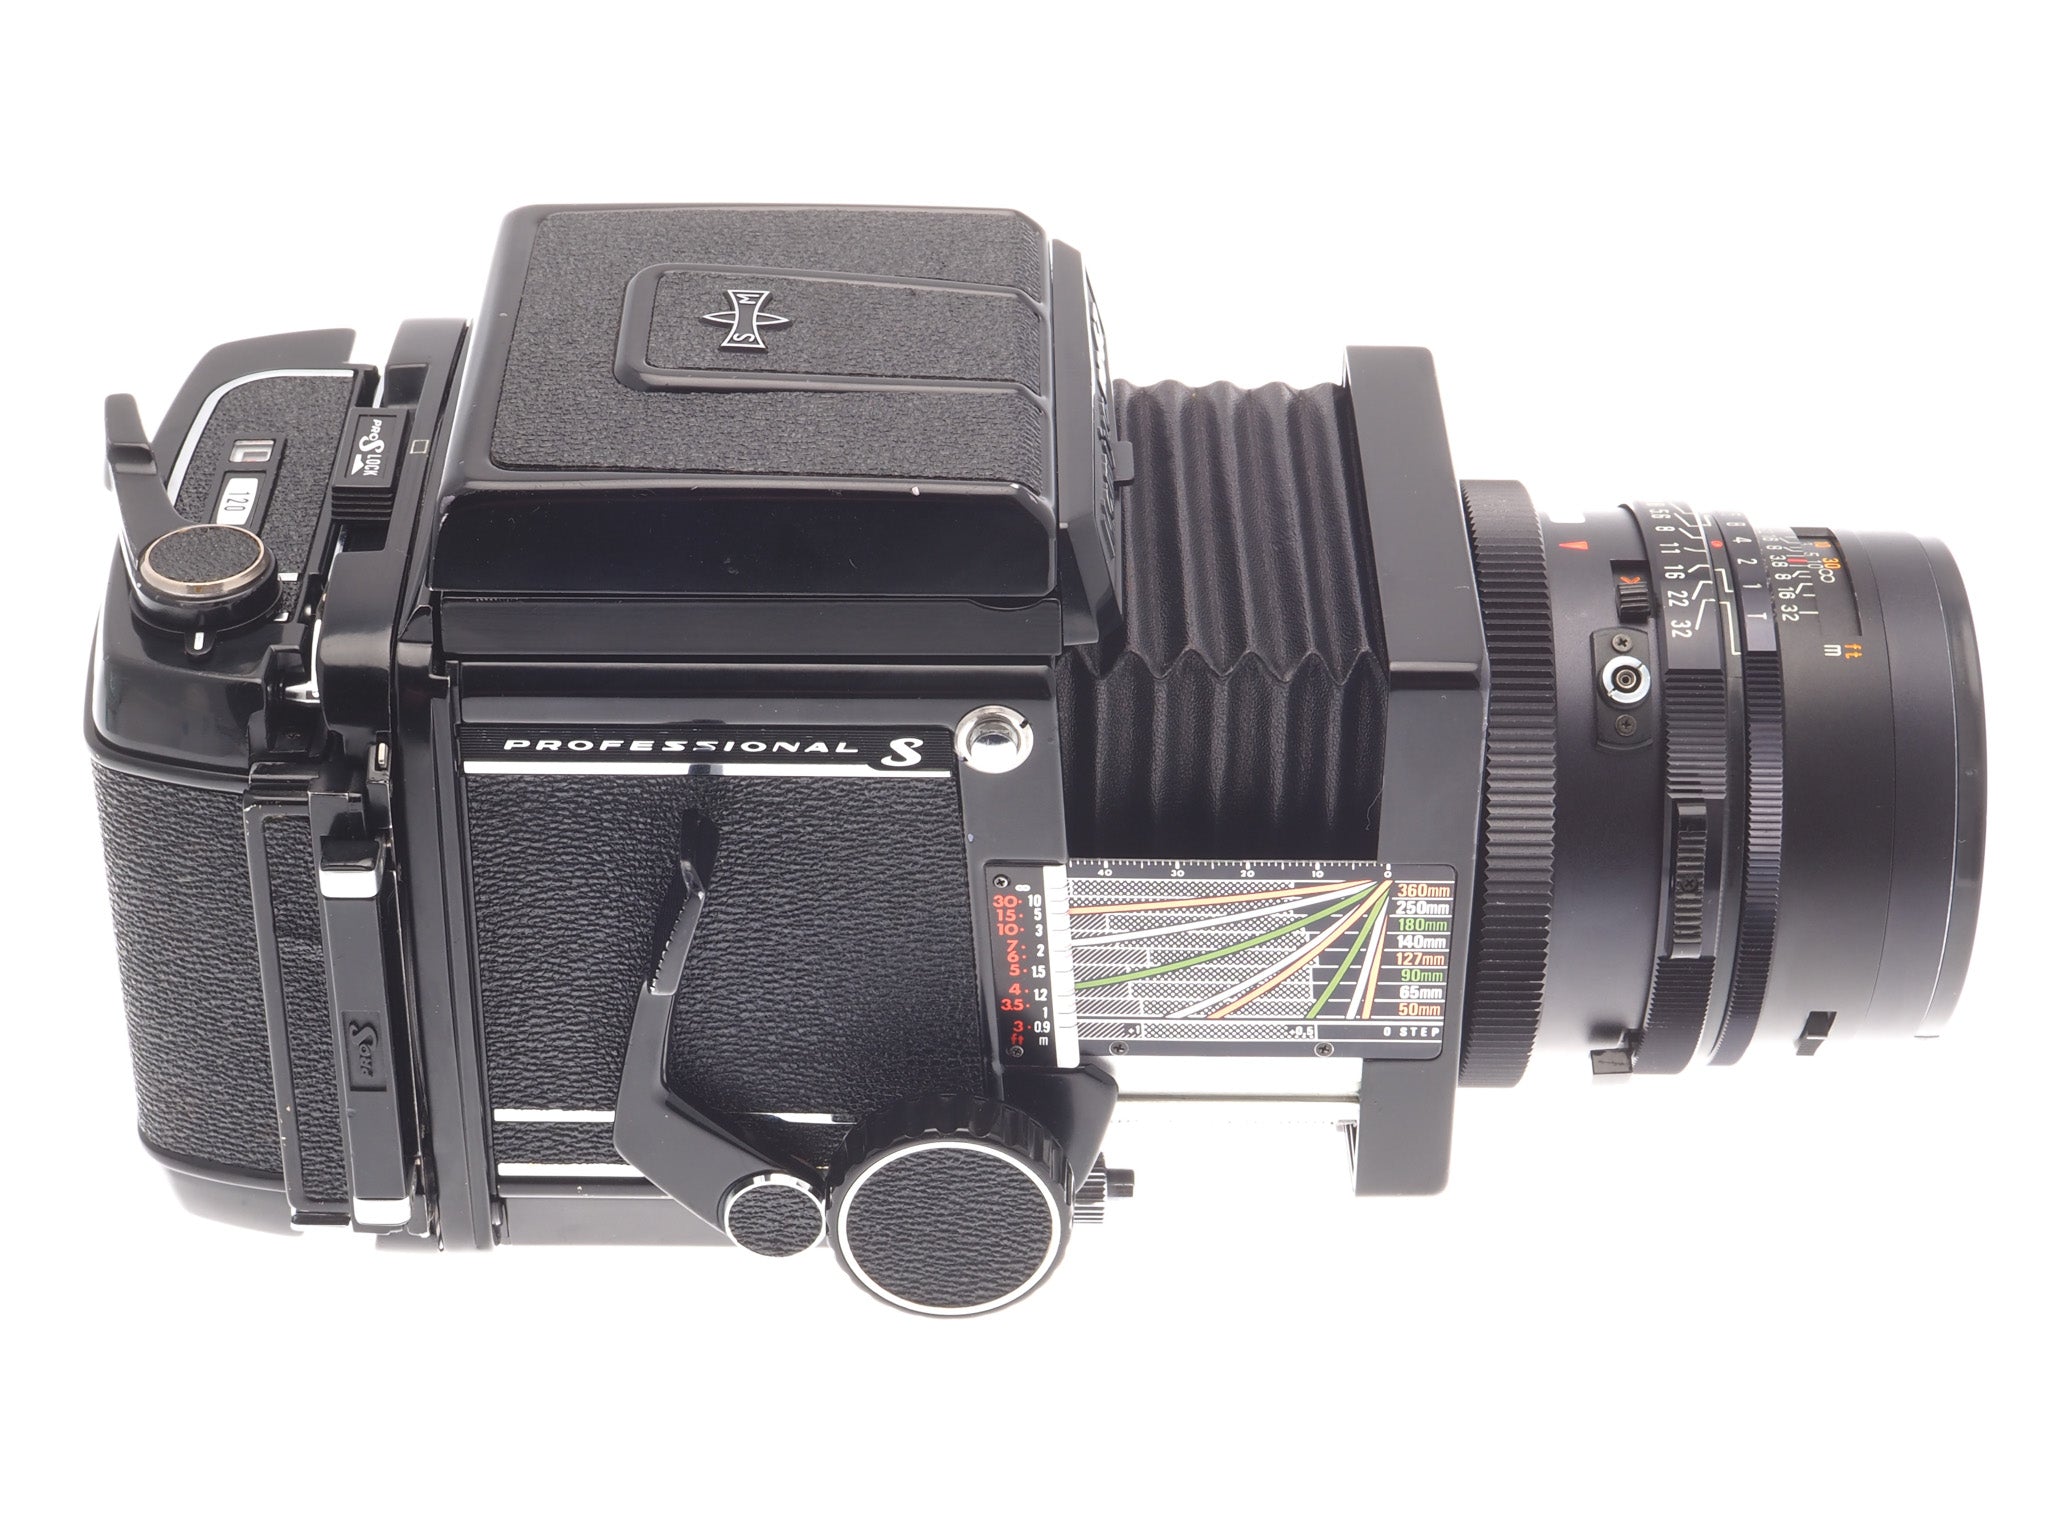 Mamiya RB67 Pro-S + 120 Pro-S 6x7 Film Back + 90mm f3.8 Sekor C + 